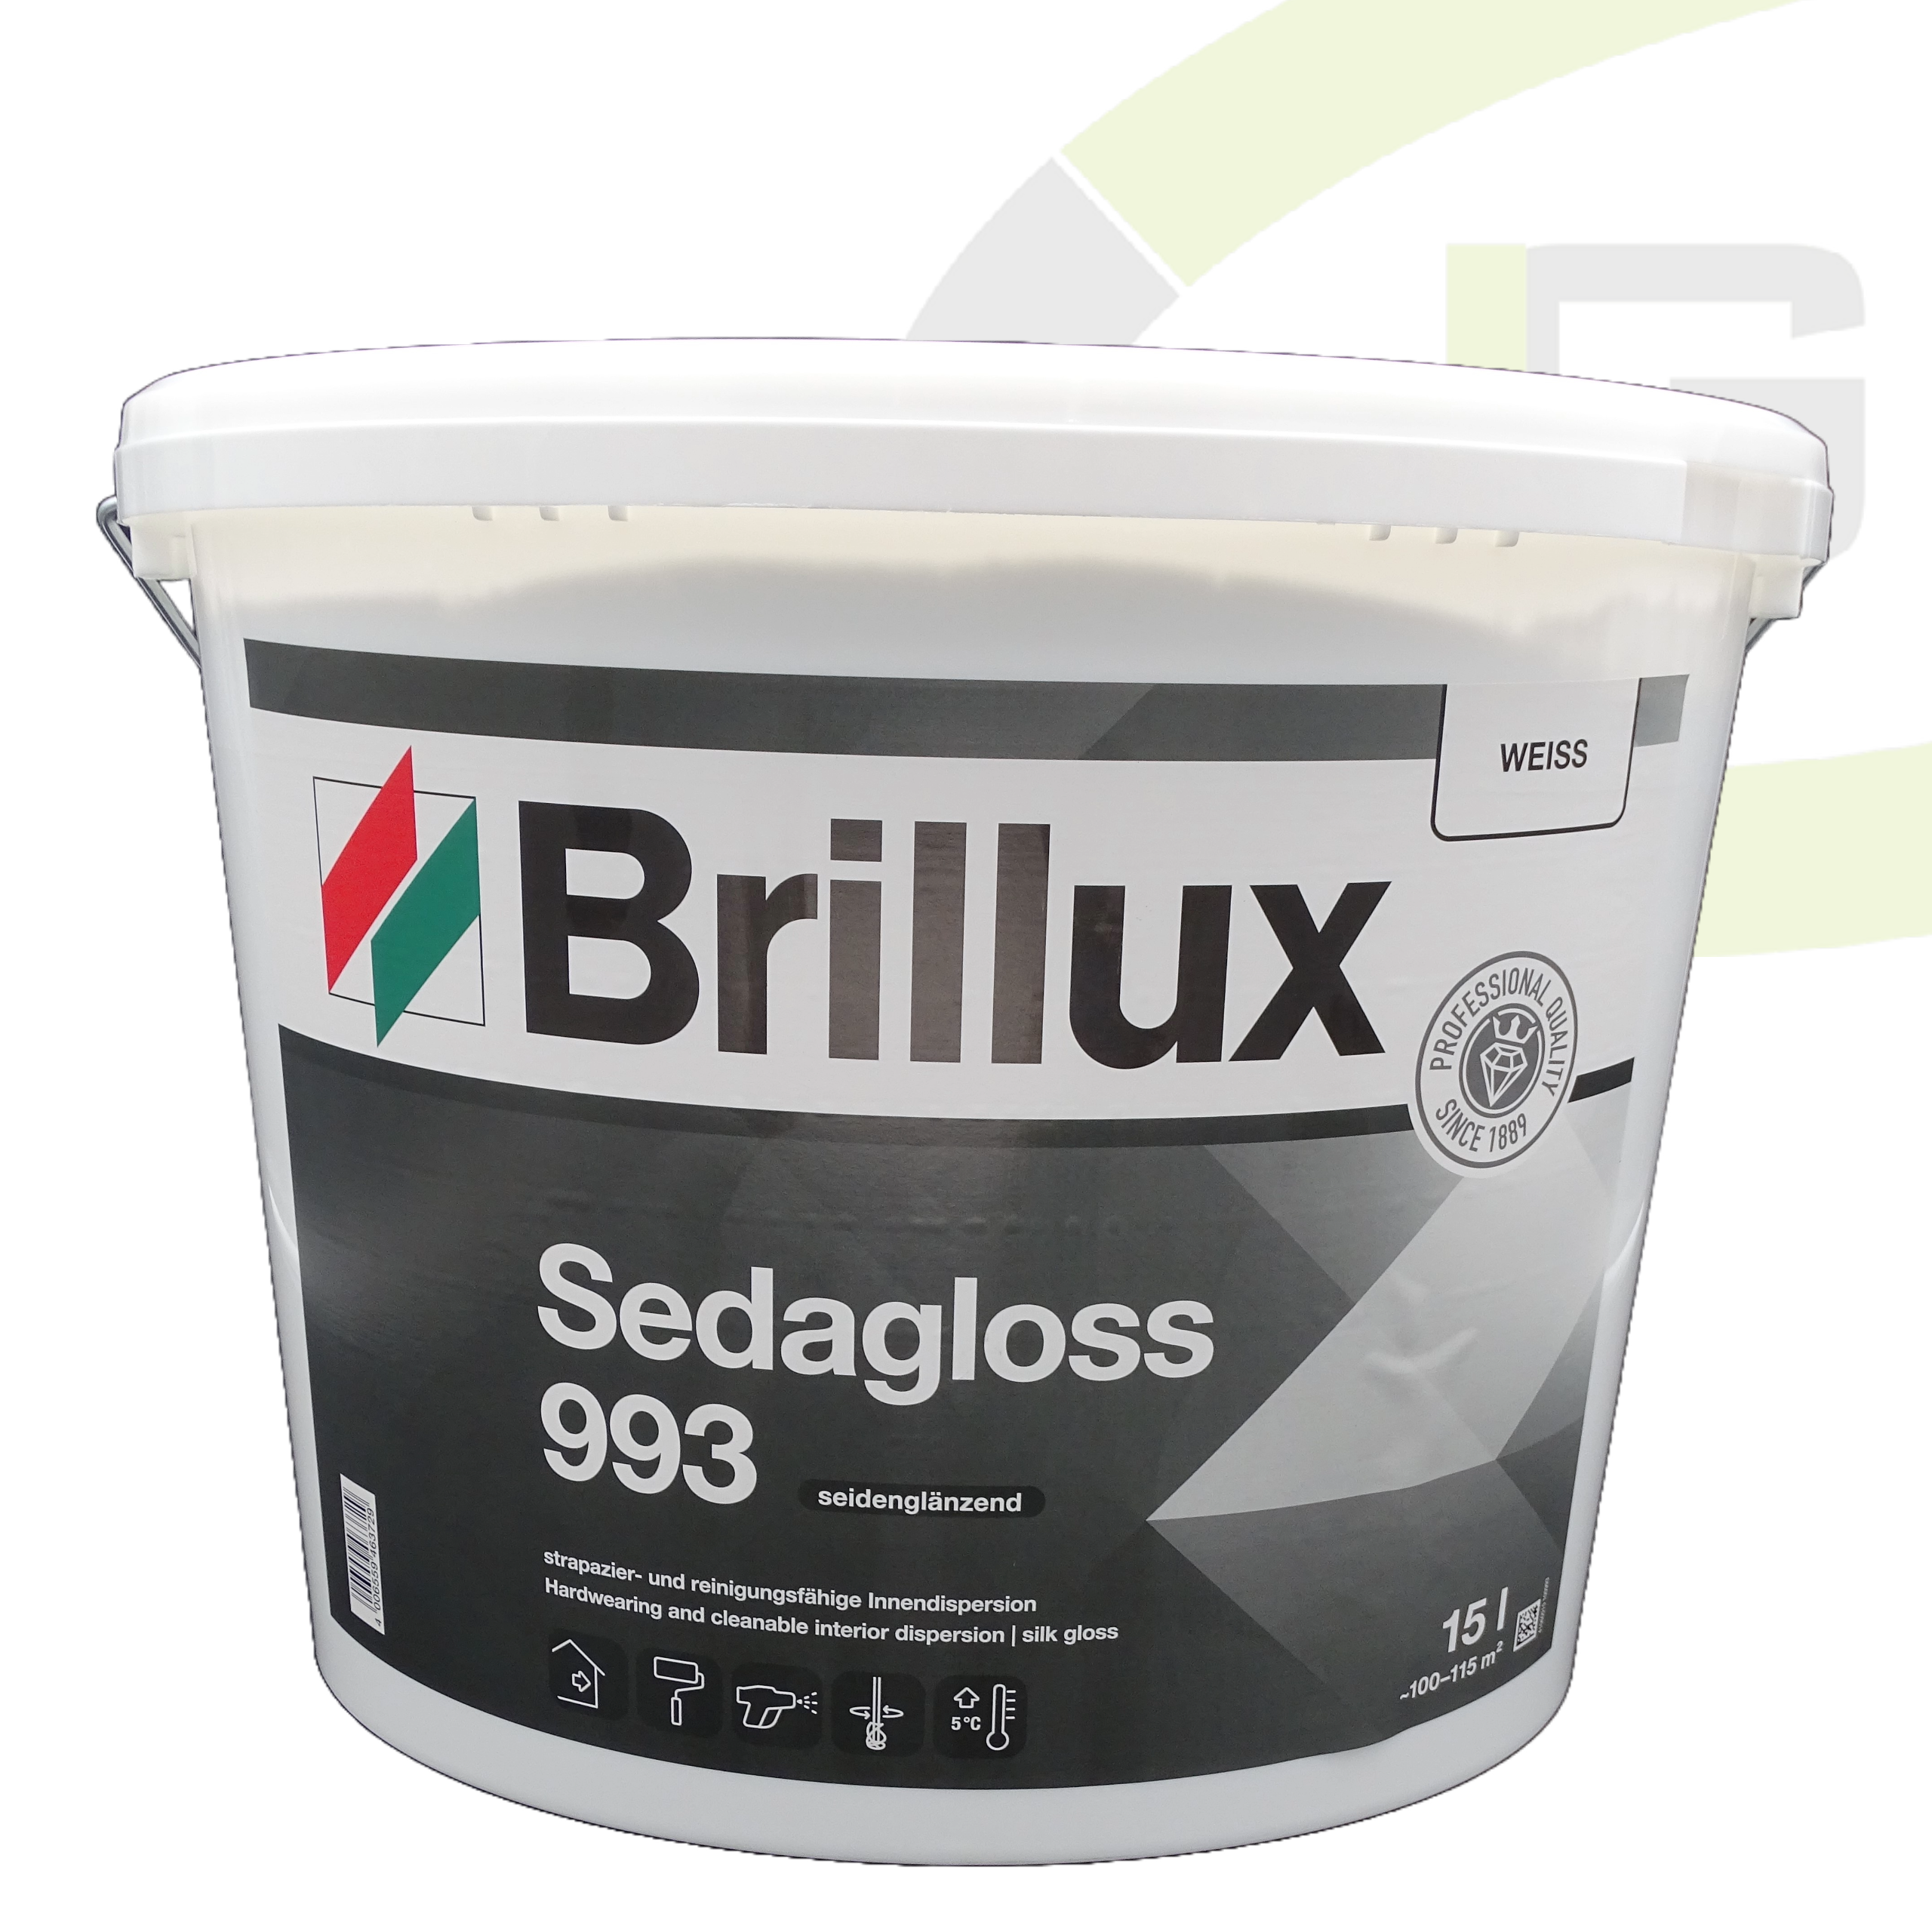 Brillux Sedagloss 993 weiß 15.00 LTR / Innenfarbe